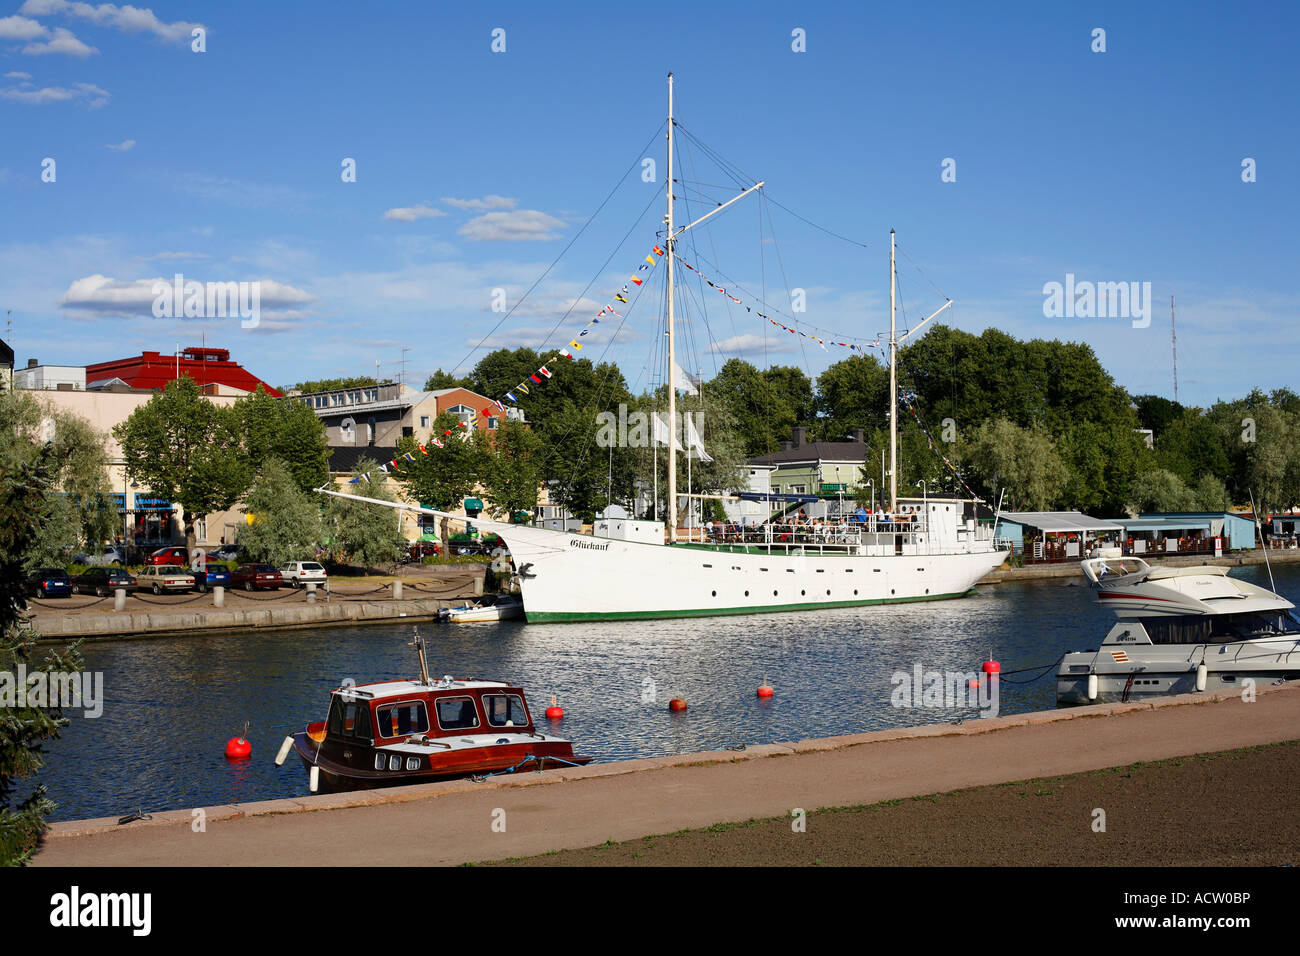 Le restaurant est un navire à vapeur unique Saalbach i voilier à Porvoo, Finlande Banque D'Images